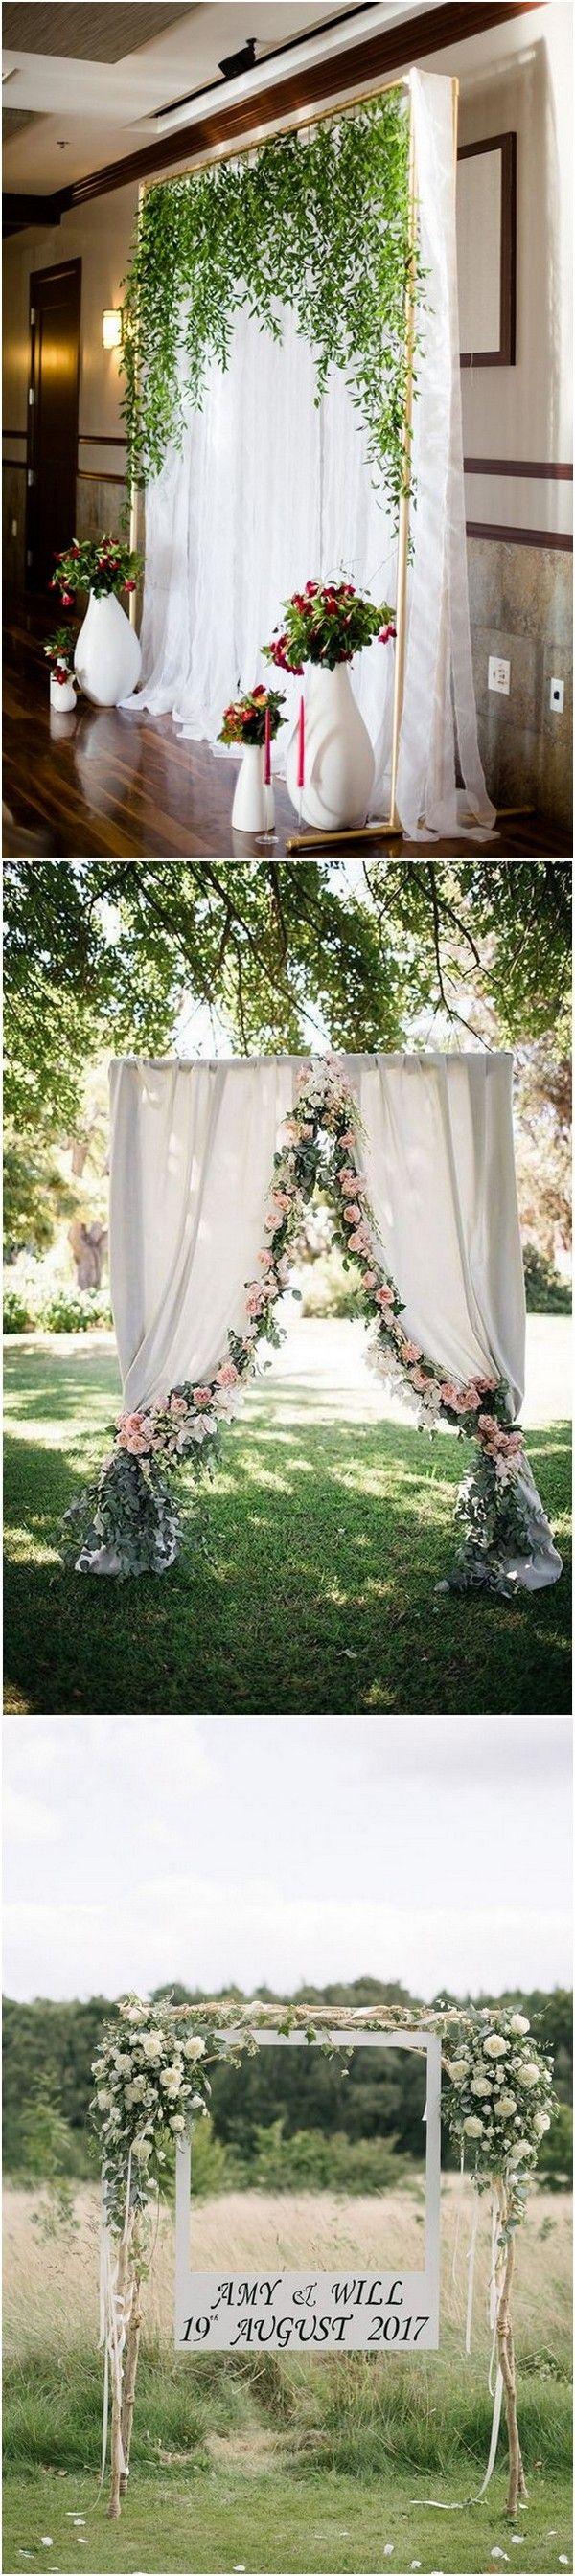 زفاف - 18 Stunning Wedding Photo Booth Backdrop Ideas